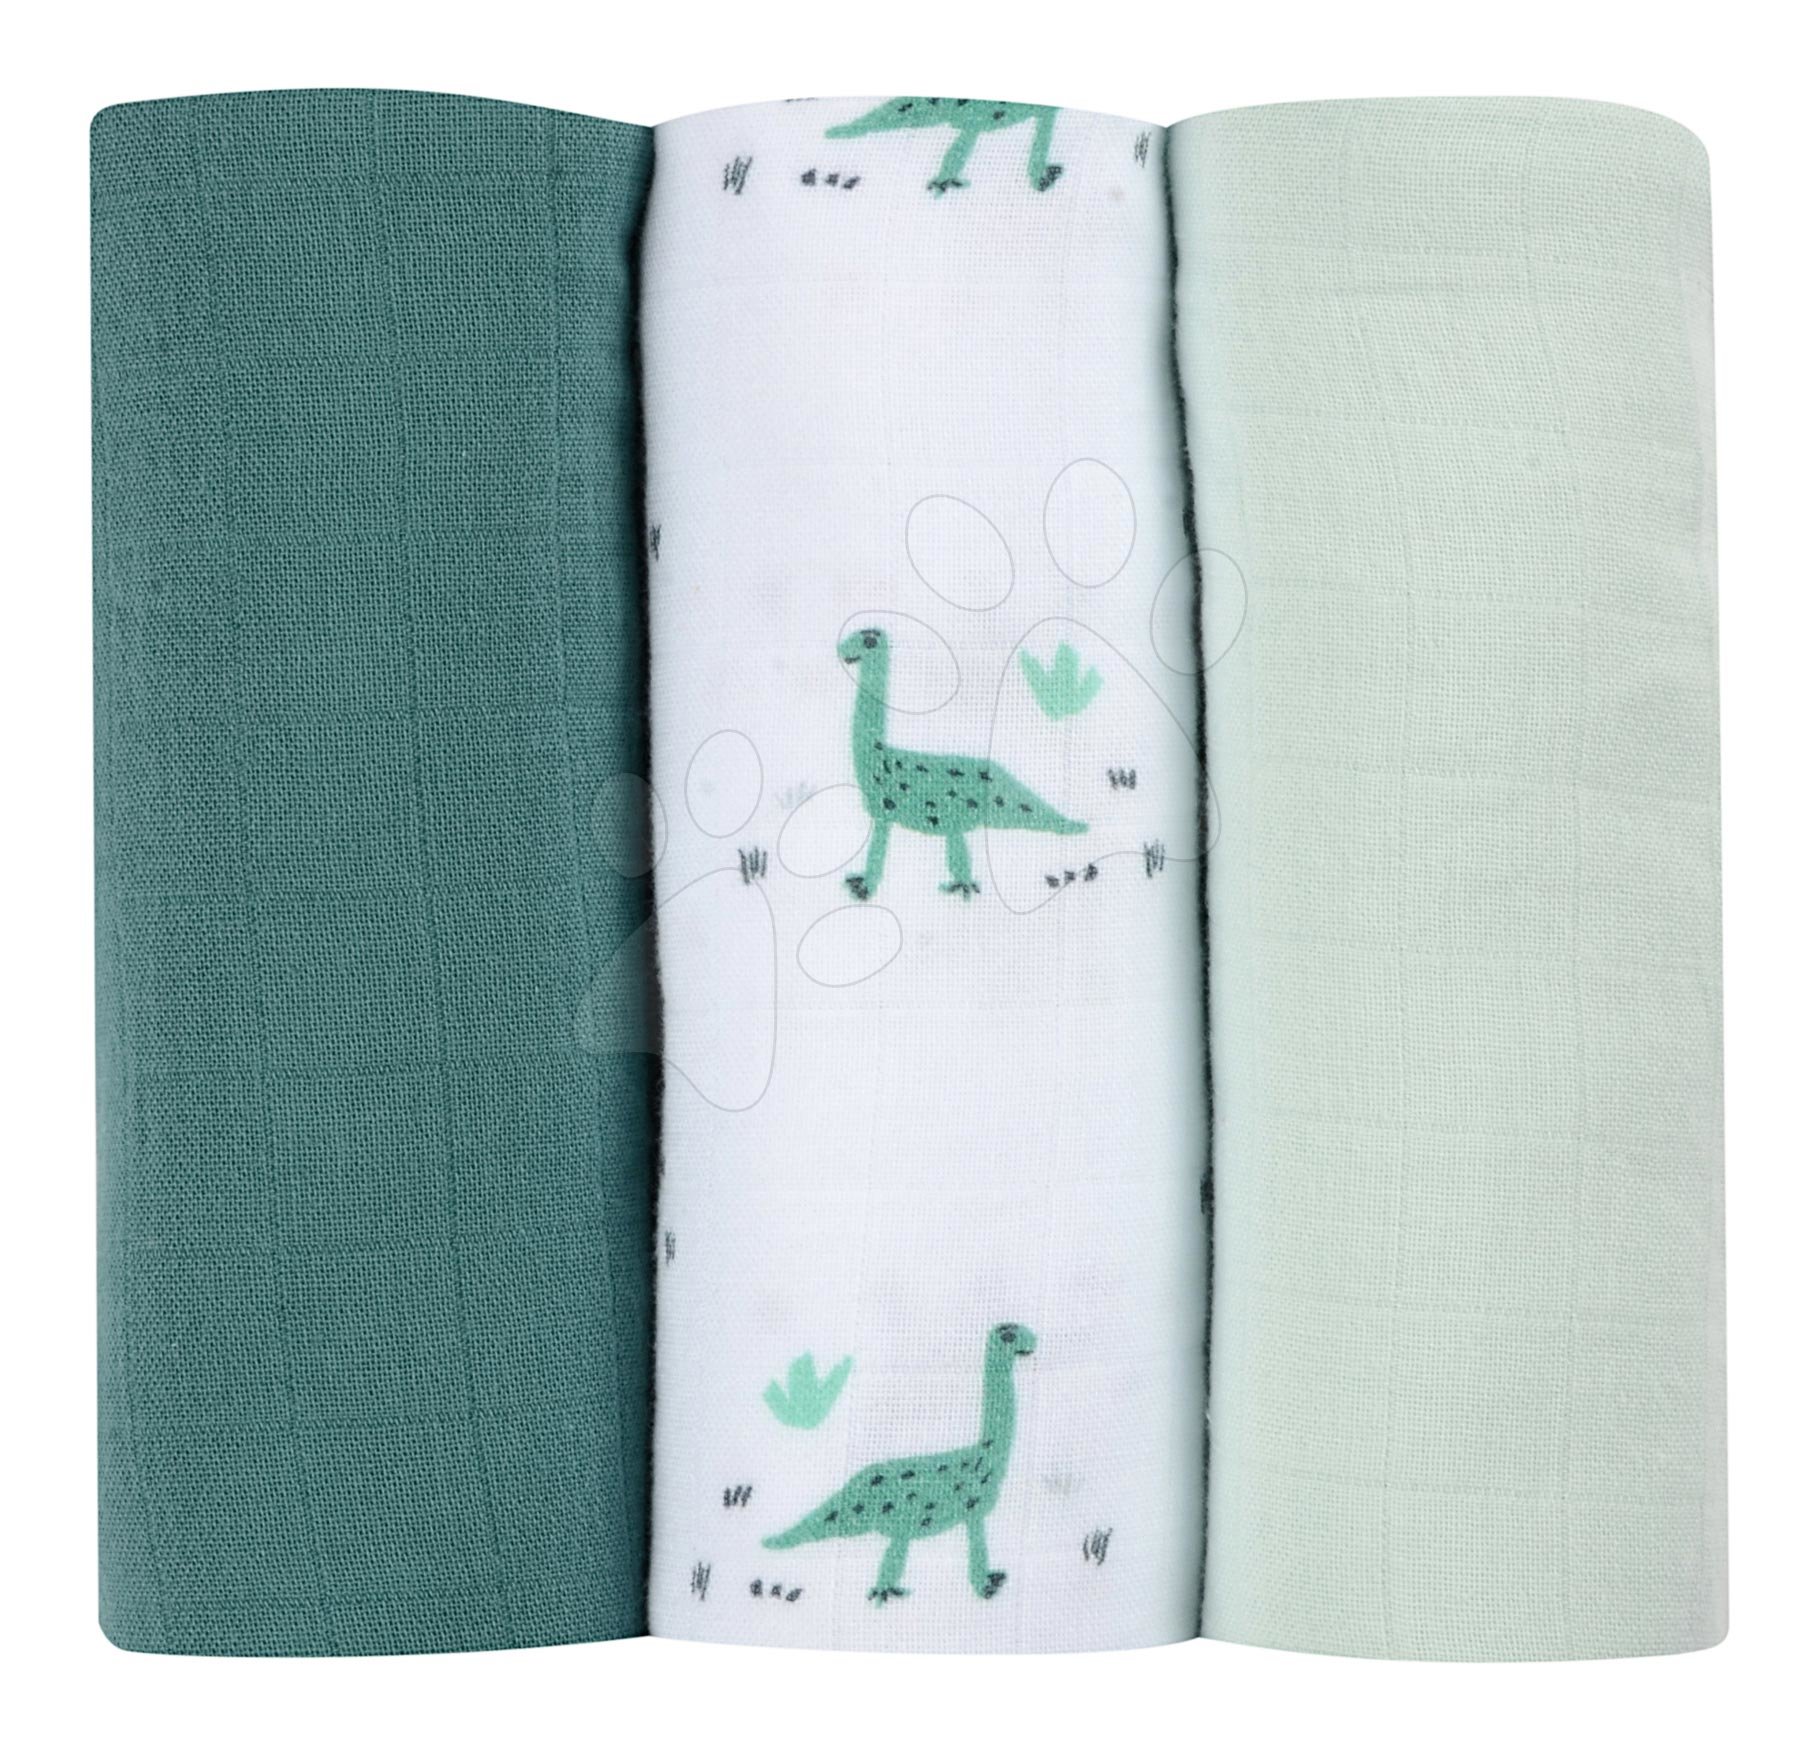 Textil pelenkák pamut muszlinból Cotton Muslin Cloths Beaba Jurassique 3 darabos csomag 70*70 cm 0 hó-tól zöld